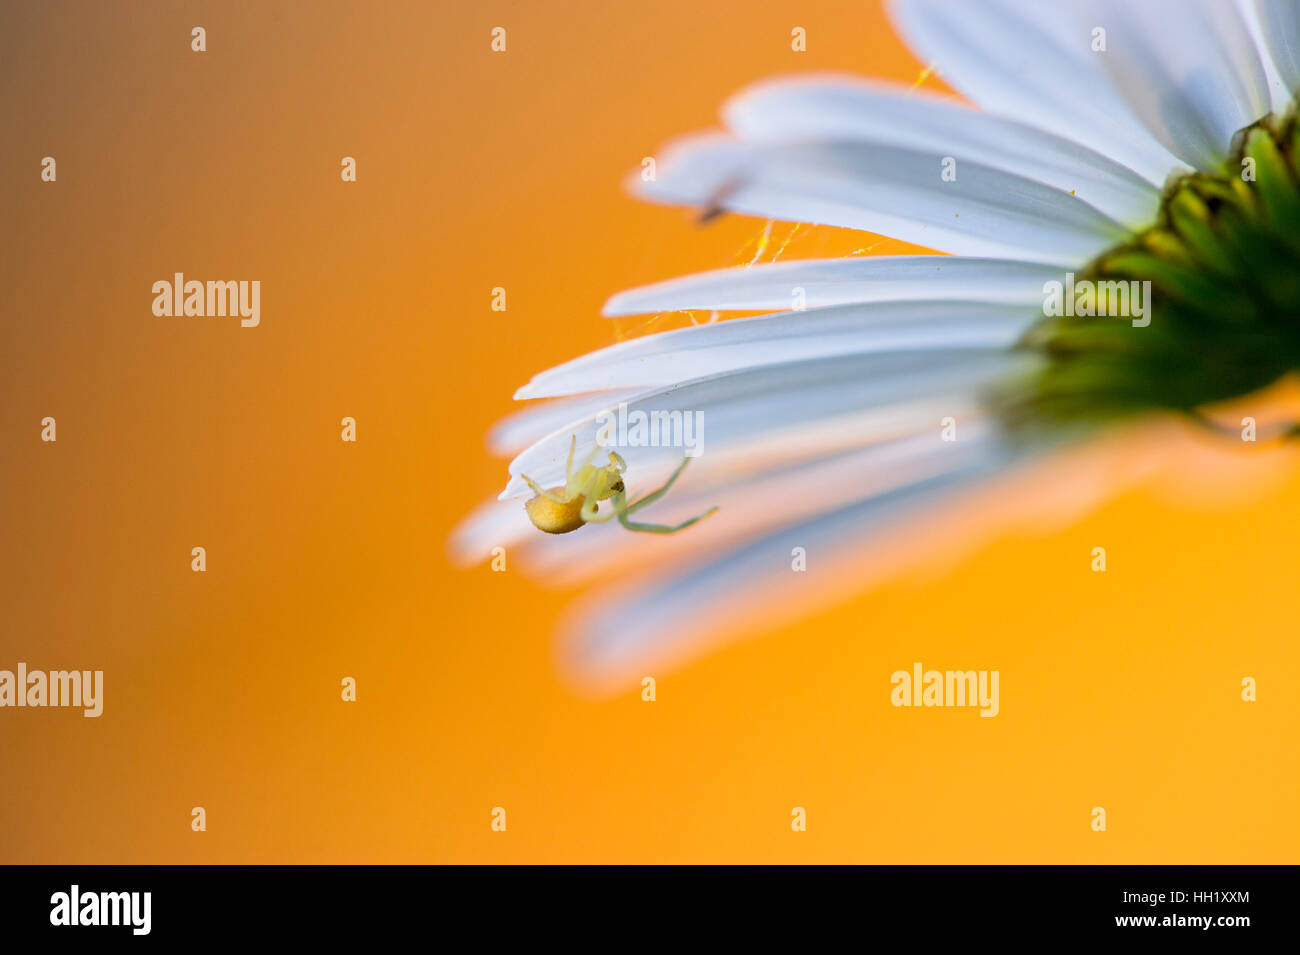 Eine winzige Spinne hängt unter einigen weißen Blütenblättern. mit einem hellen orange Hintergrund. Stockfoto